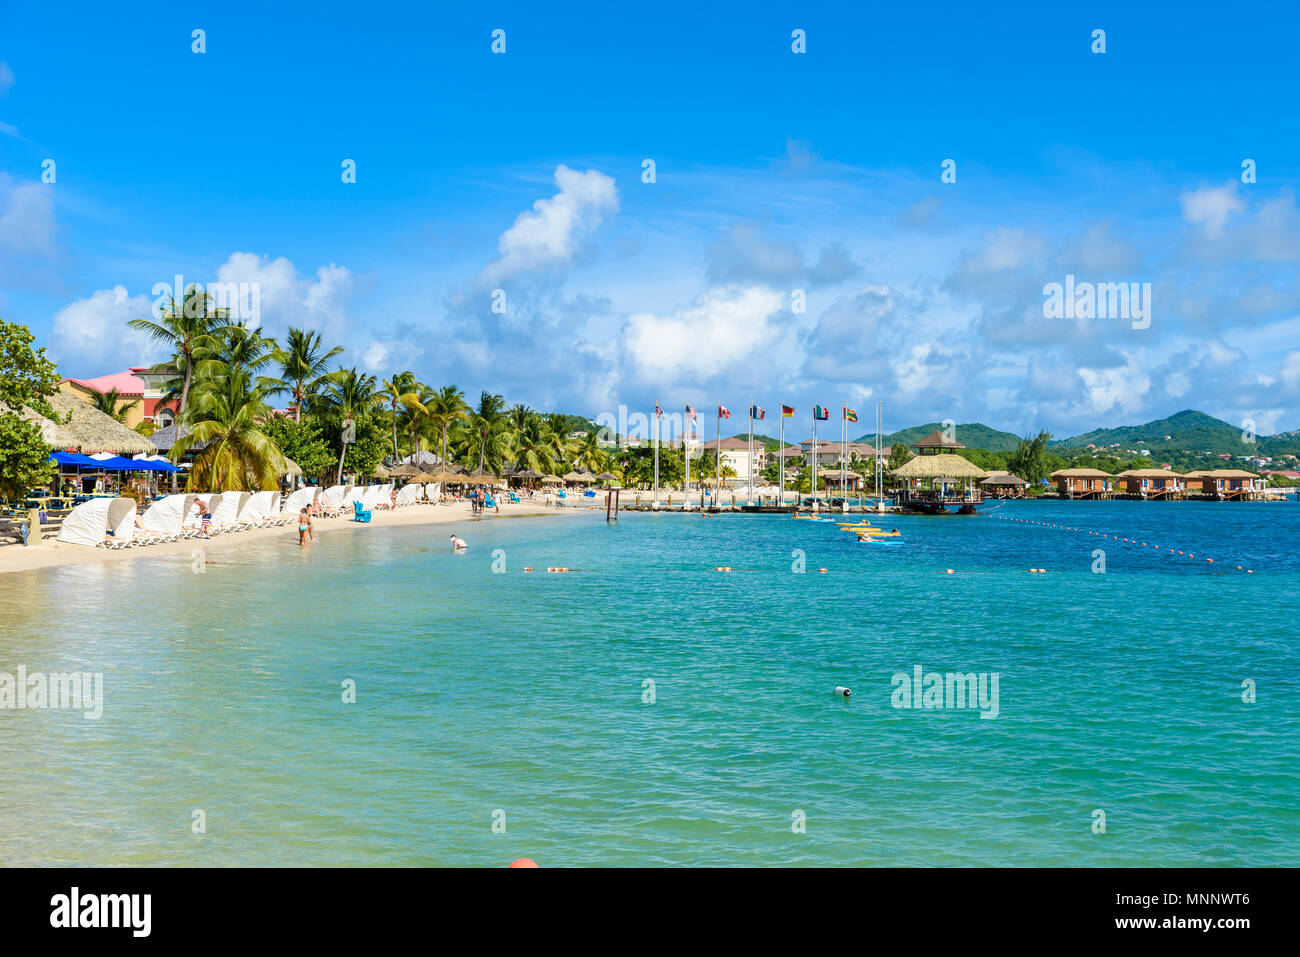 Pigeon Island Beach - costa tropicale sull'isola caraibica di Santa Lucia. Si tratta di una destinazione paradiso con una spiaggia di sabbia bianca e mare turquoiuse. Foto Stock